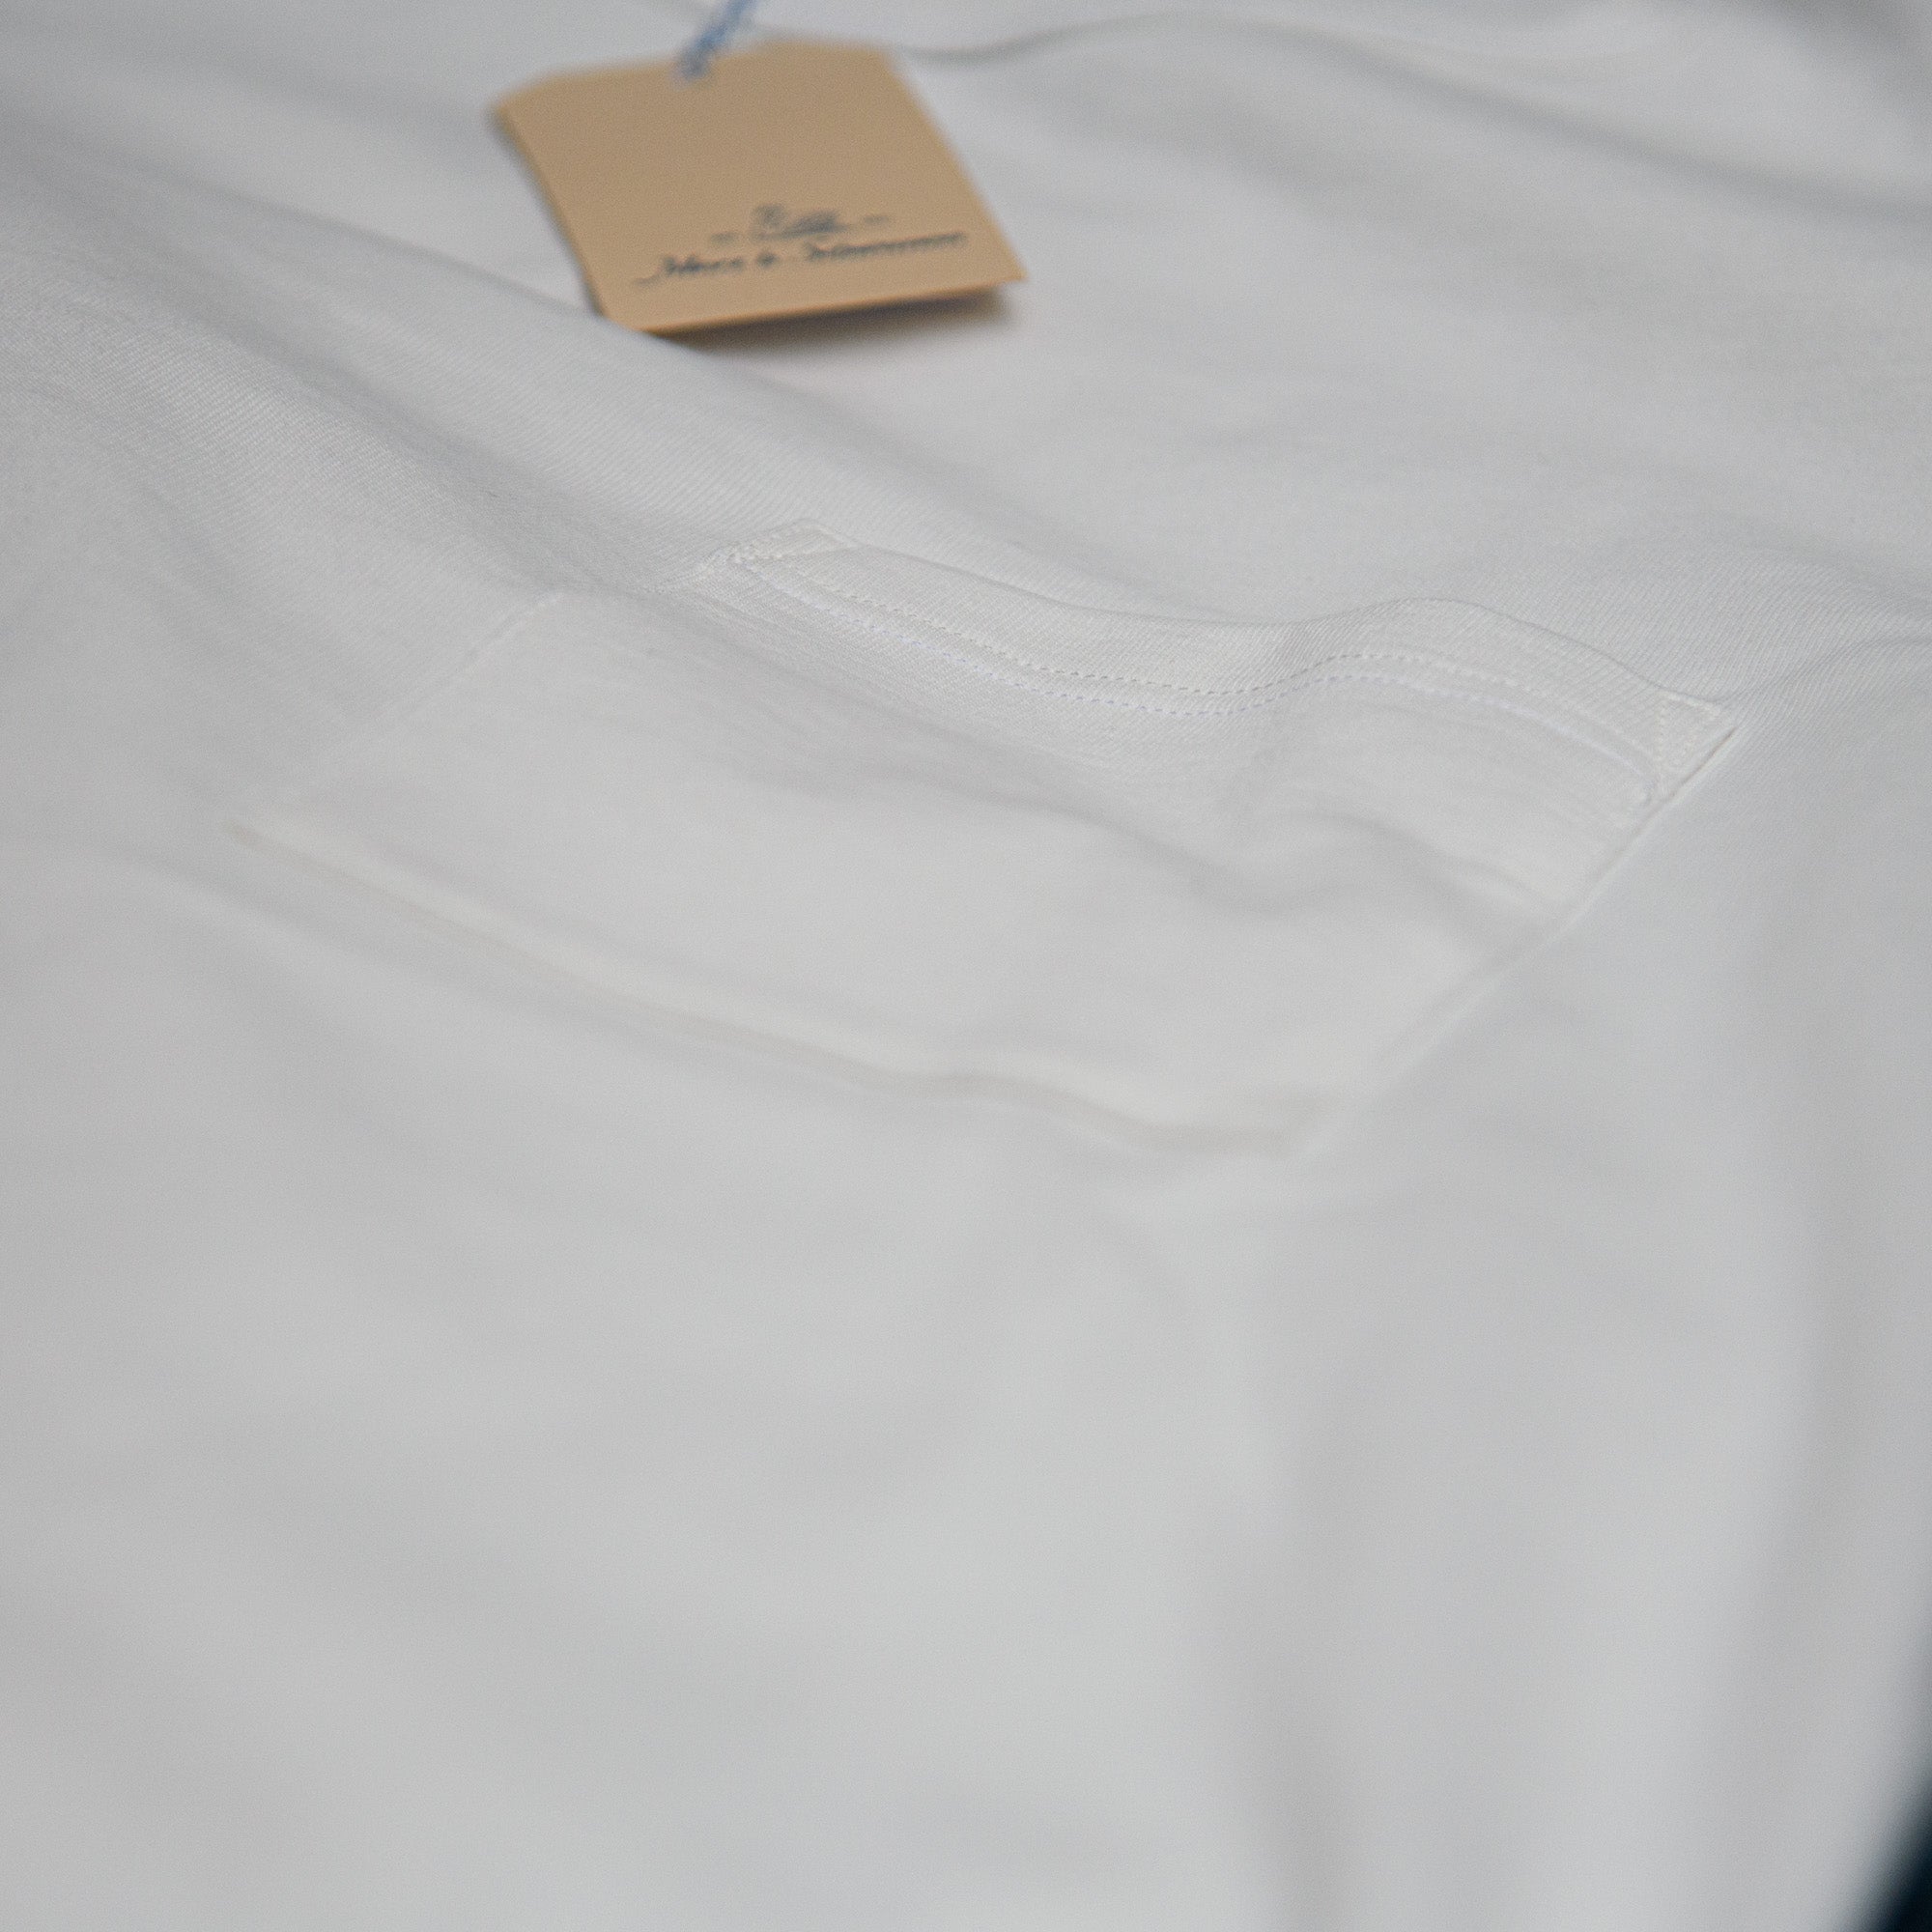 Exclusive b Schwanen White T-Shirt Limited Edition – Pocket 215 / (Europe) Store Merz